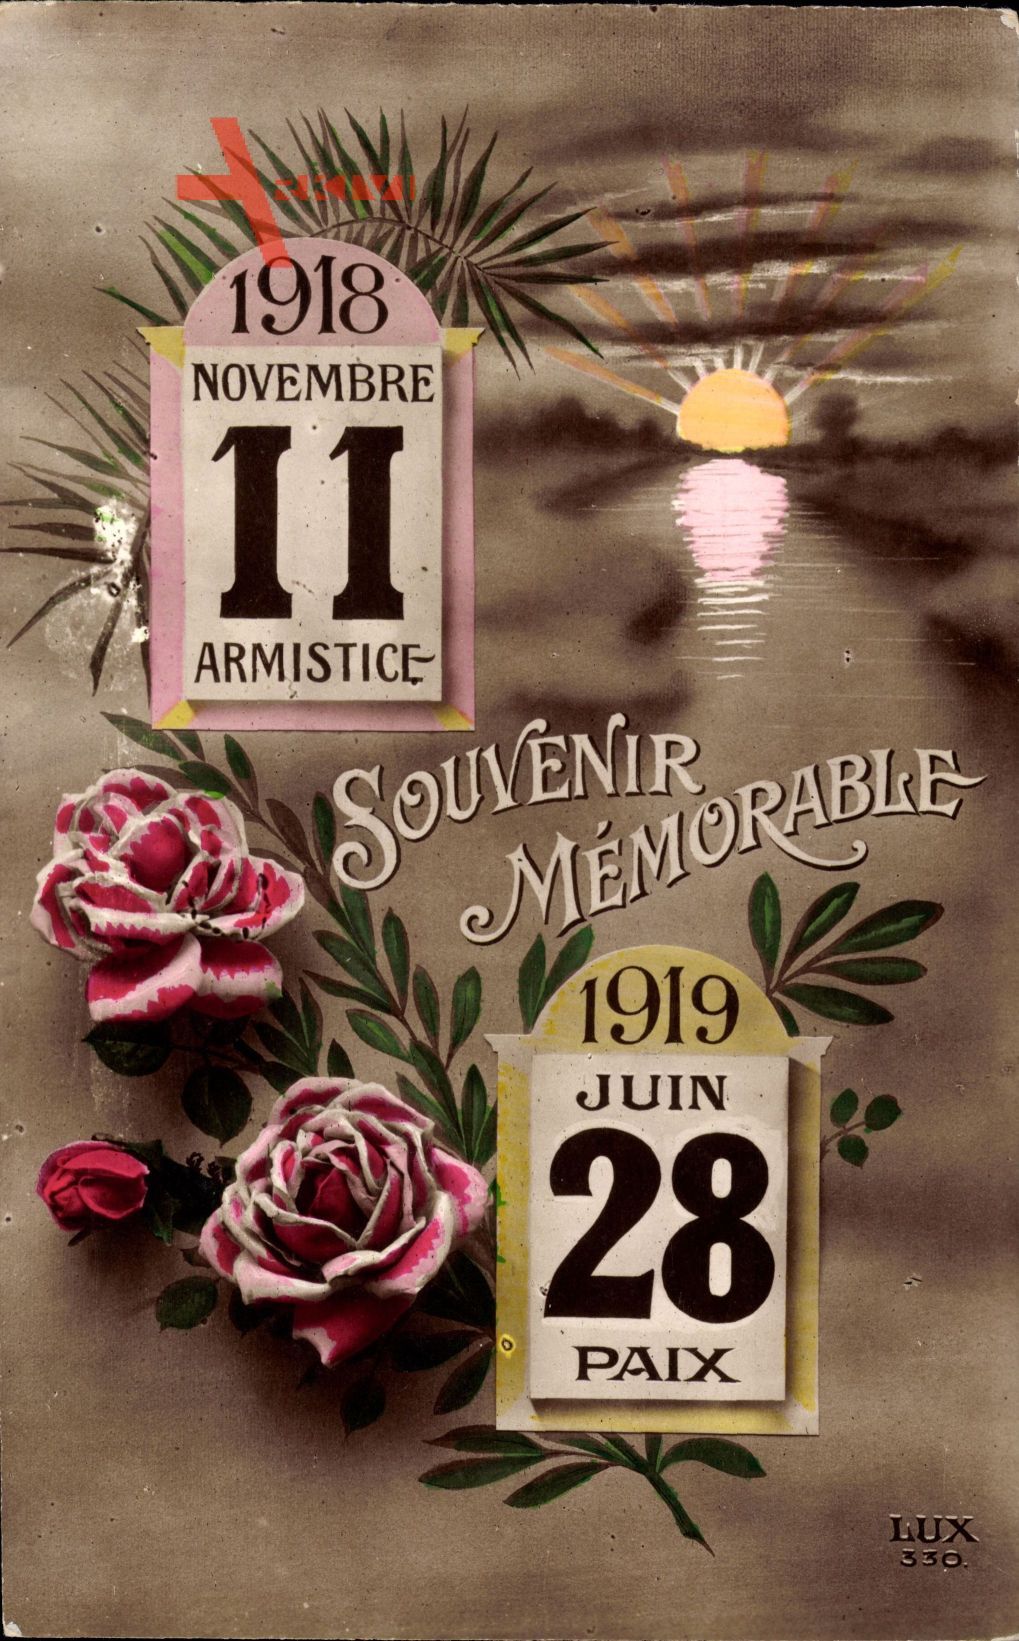 11 Novembre 1918 Armistice, 28 Juin 1919 Paix, Weltkrieg, Ende